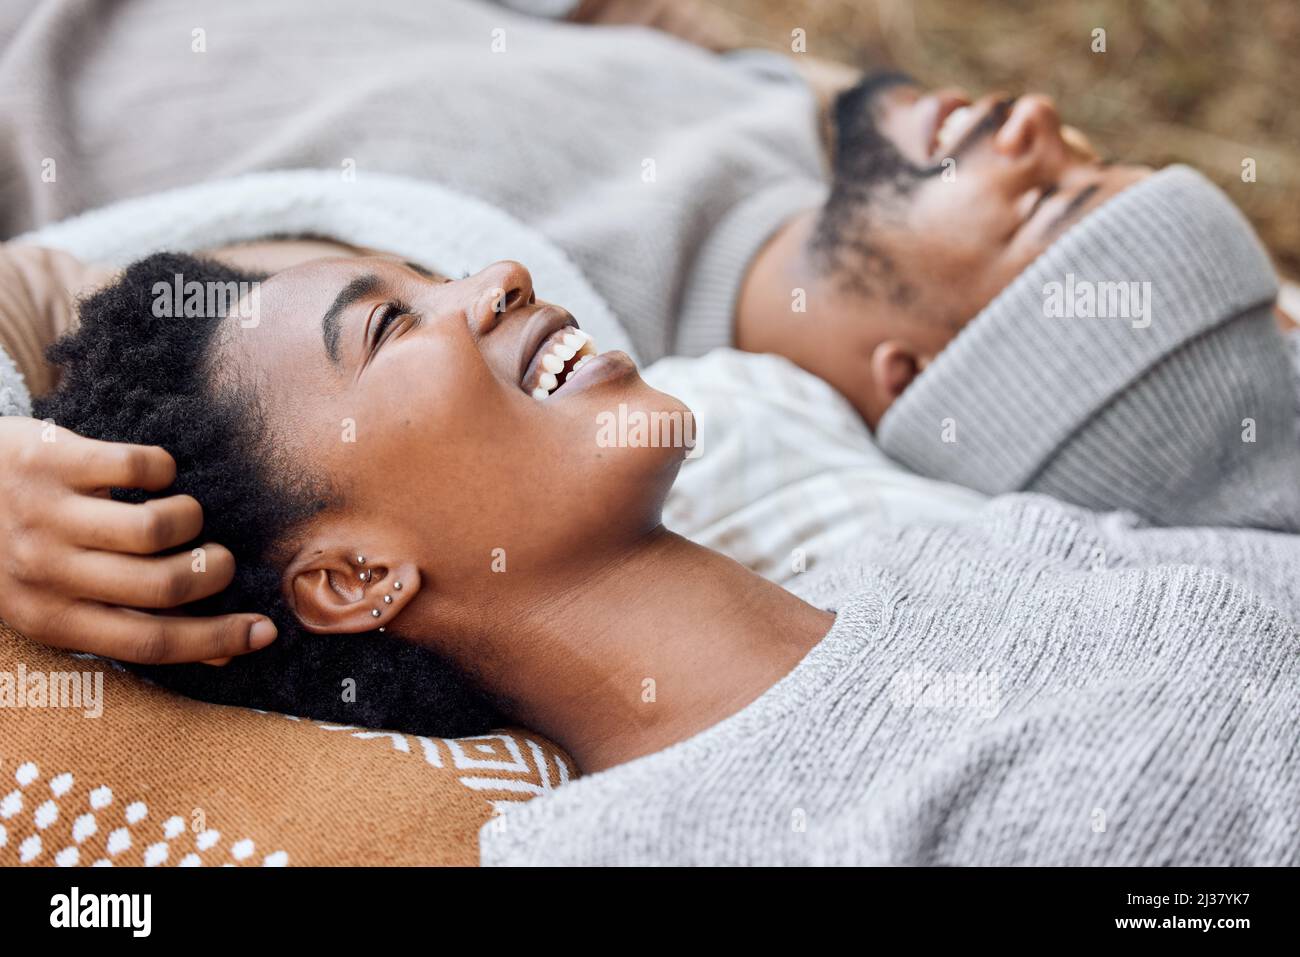 Il vostro punto di vista è sempre così illuminante. Shot di una giovane coppia sdraiata insieme mentre si accampano. Foto Stock